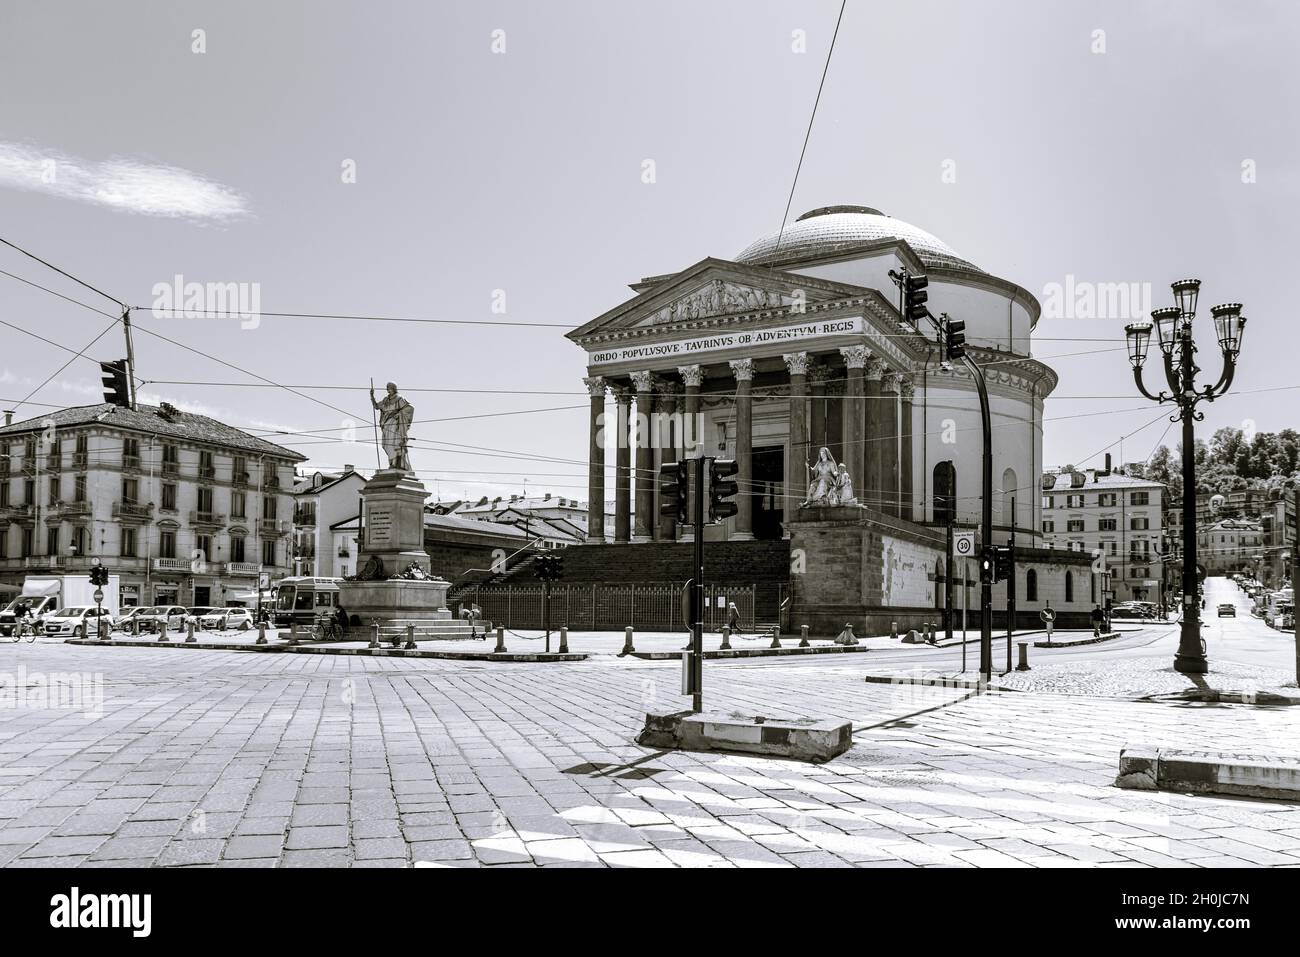 Turin, Italie.12 mai 2021.Façade de l'église Gran Madre di Dio vue de Corso Casale.Image en noir et blanc. Banque D'Images